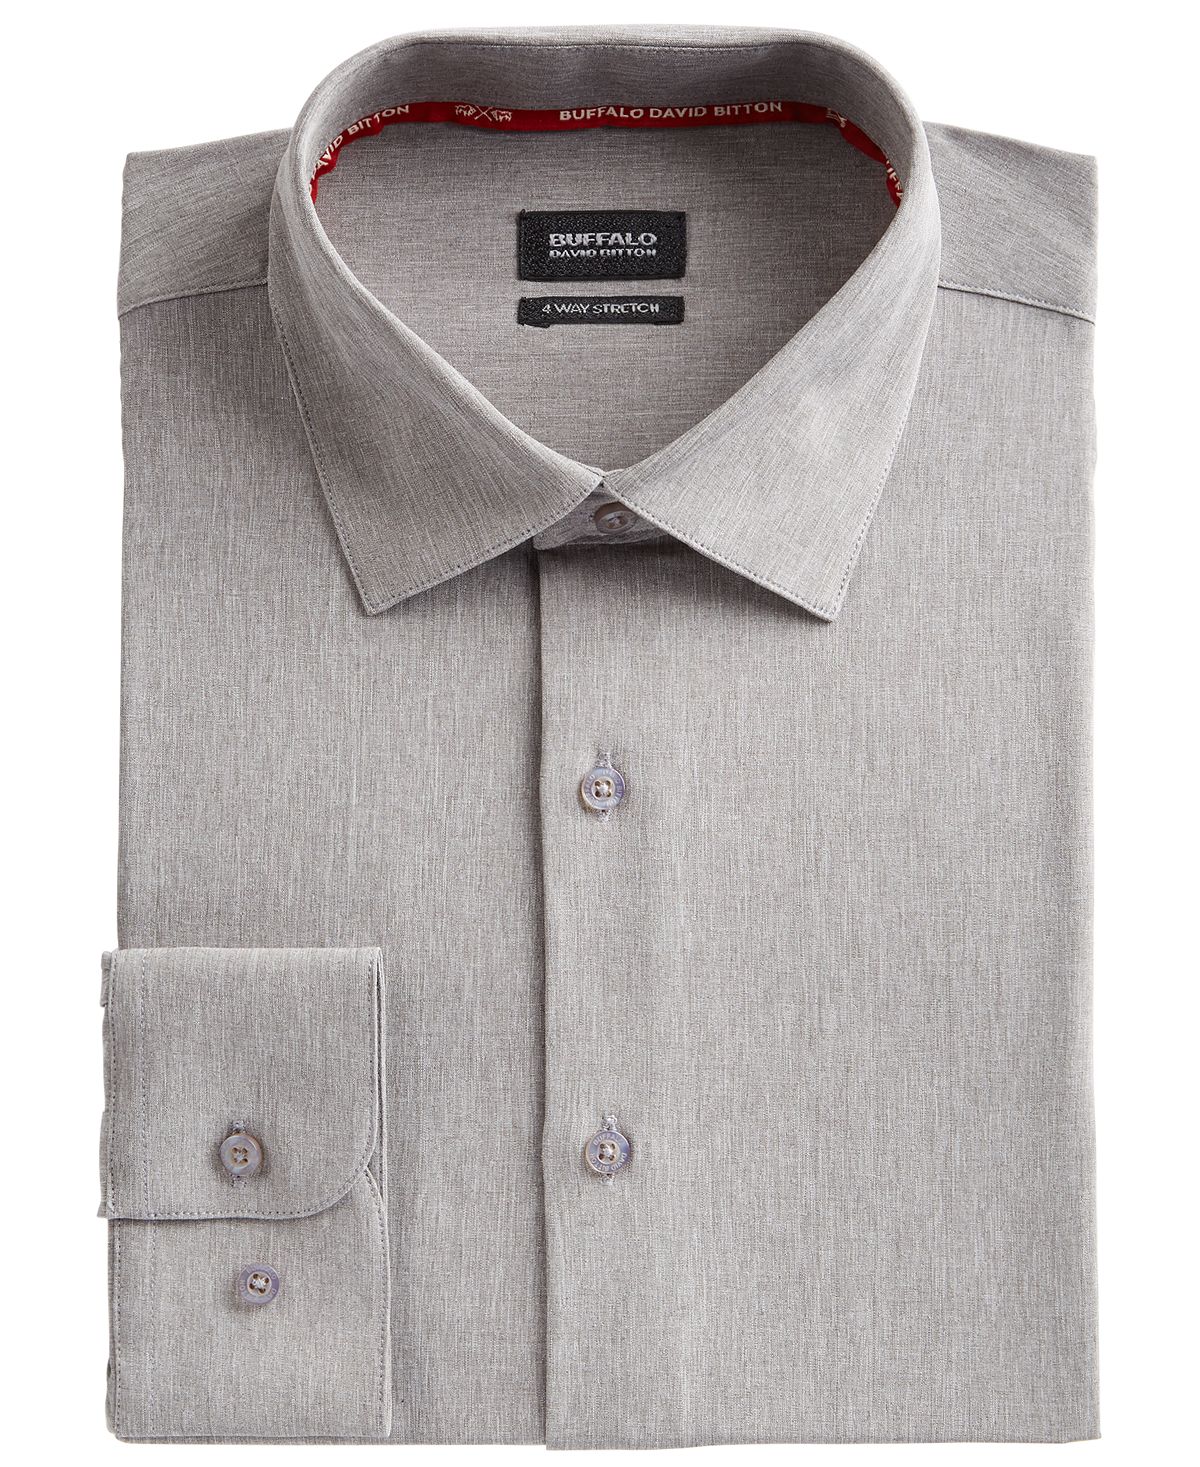 Мужская классическая рубашка slim-fit performance stretch серого цвета из однотонного шамбре Buffalo David Bitton, серый